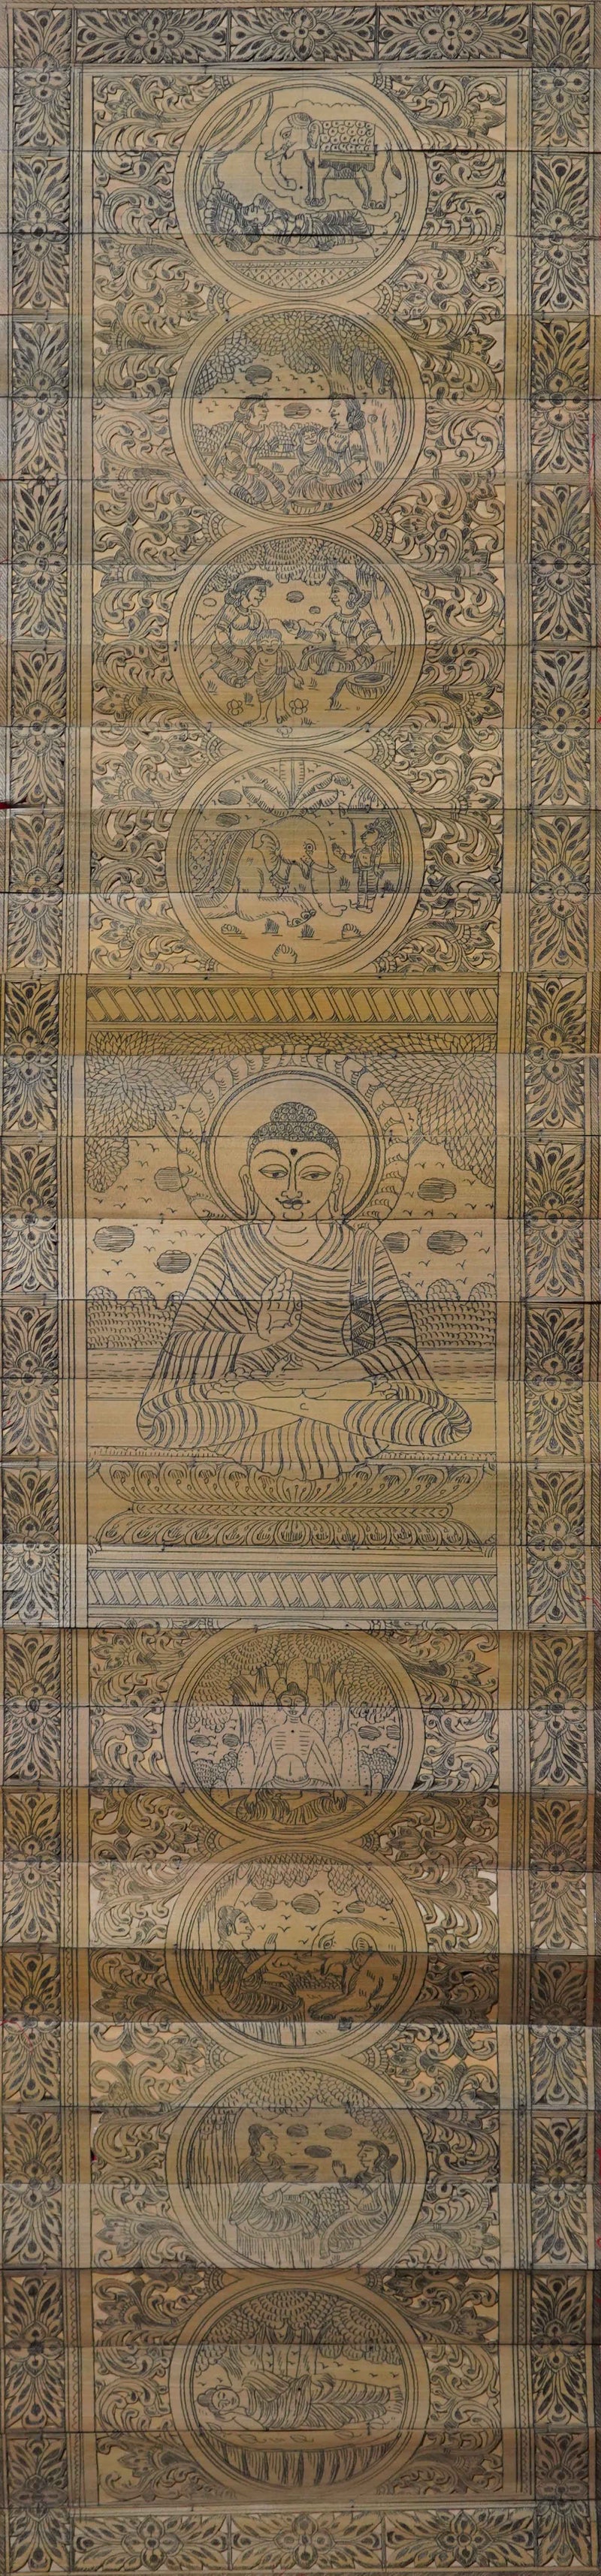  A Thalapatra Mastery of Buddha’s Life by Apindra Swain